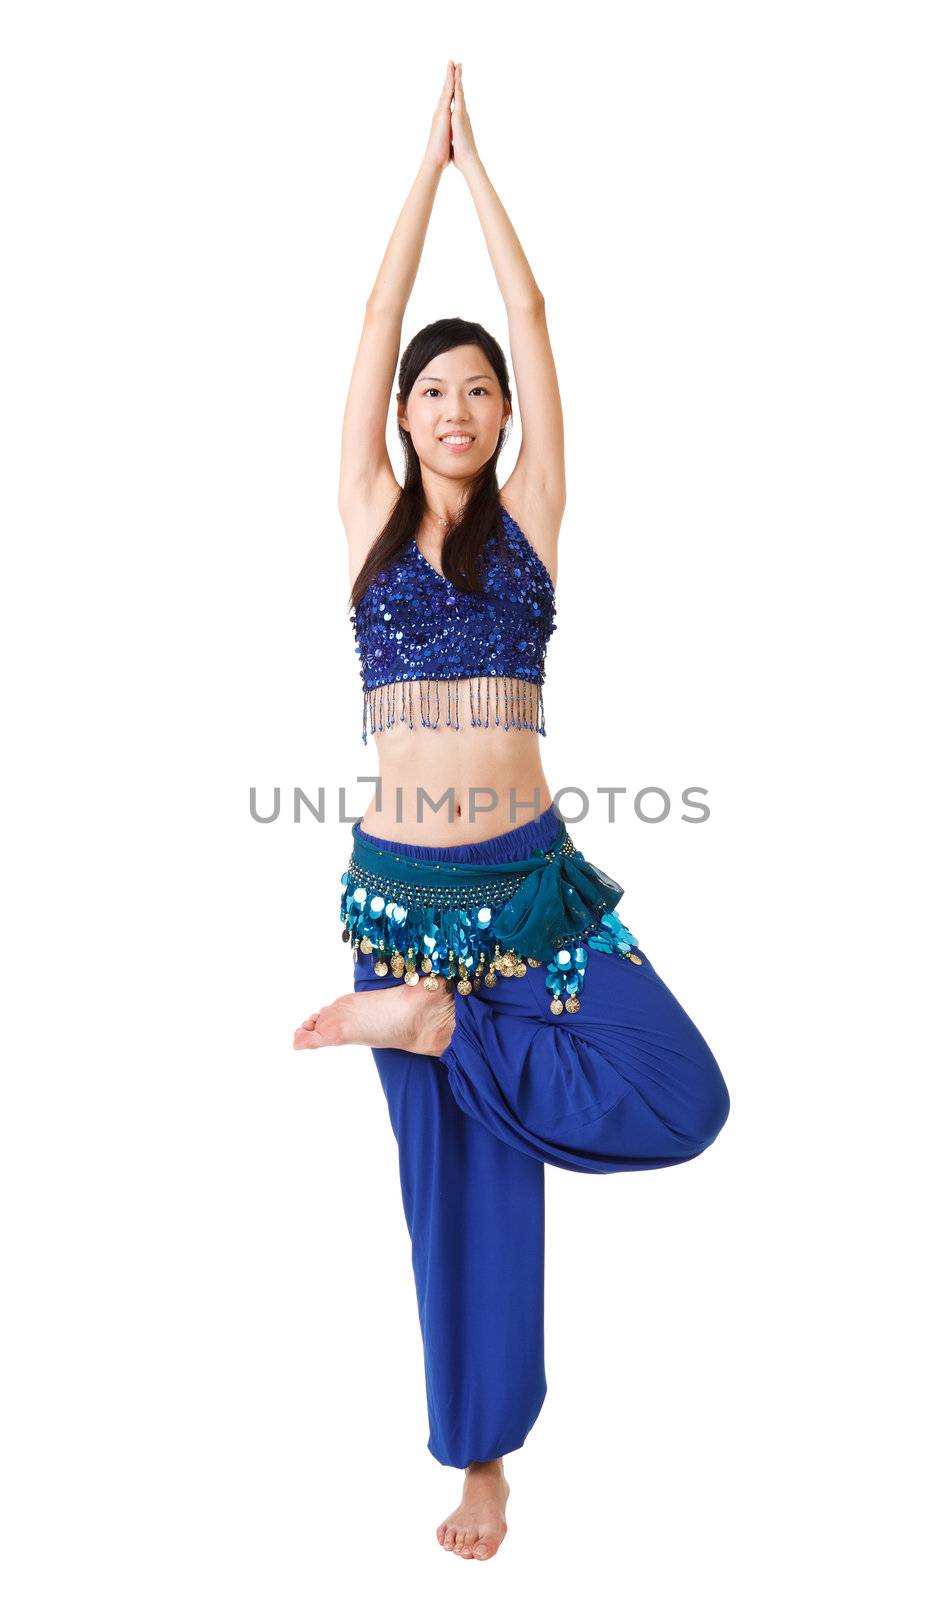 Yoga pose by elwynn